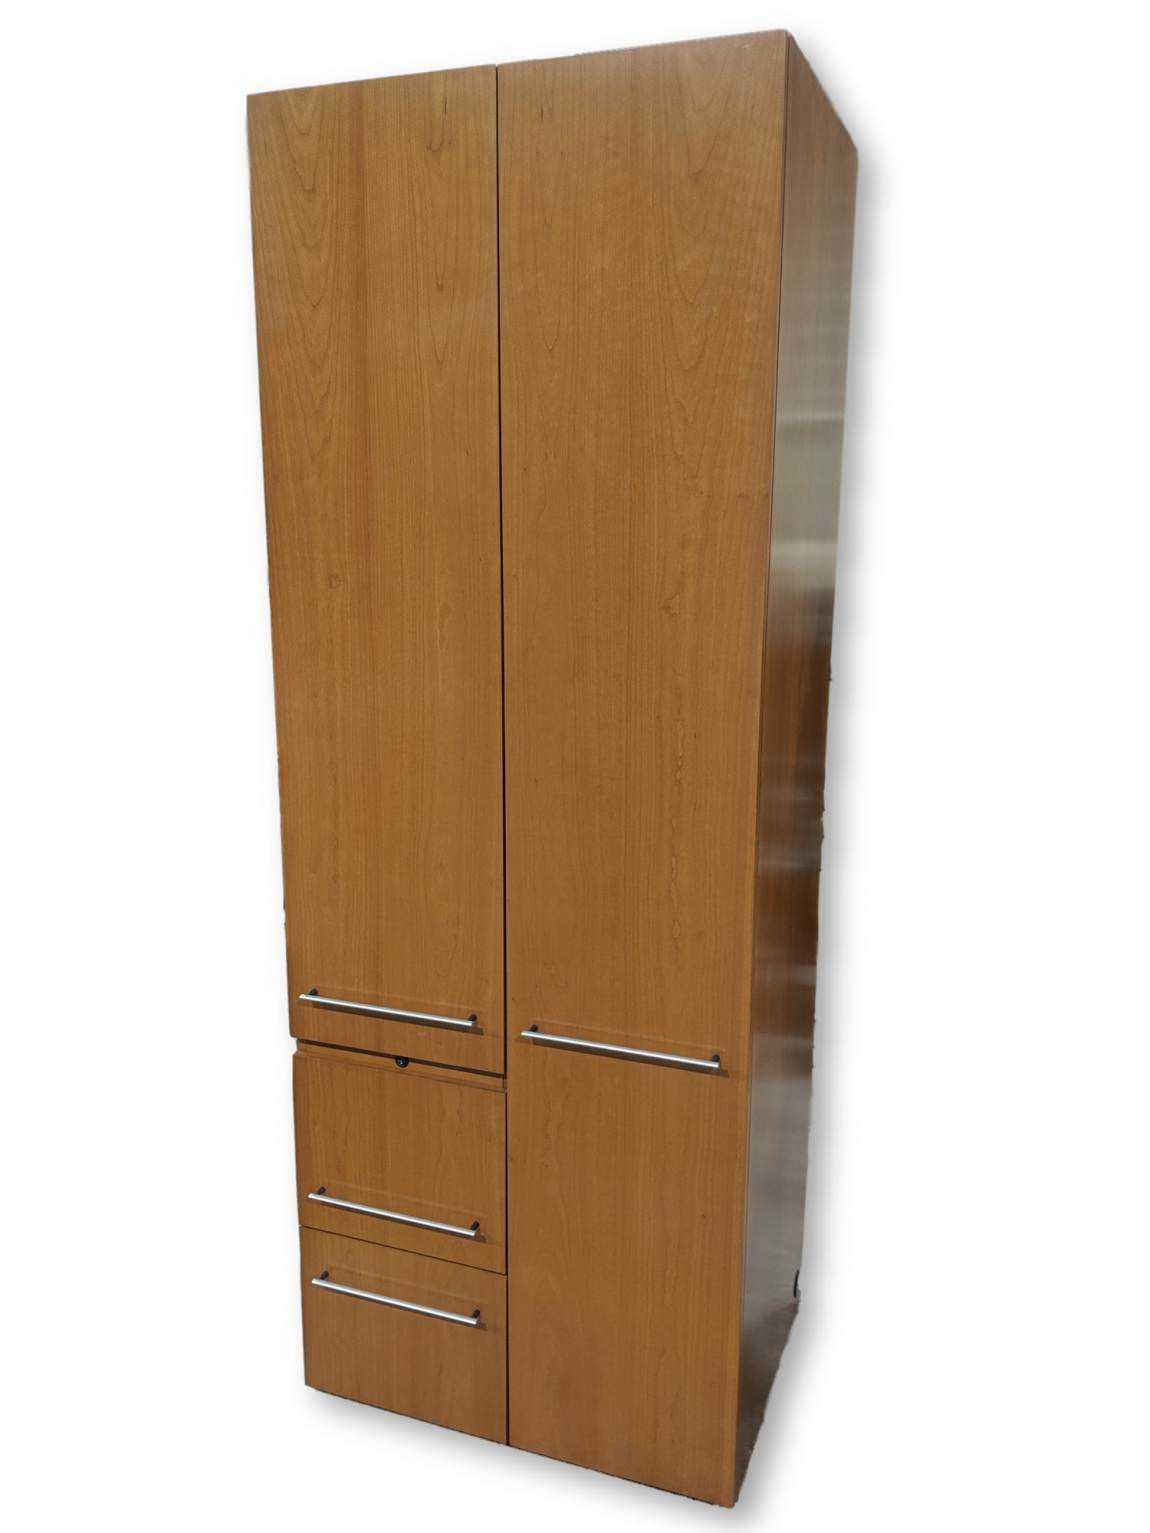 Steelcase Cherry Storage Cabinet with Wardrobe Storage